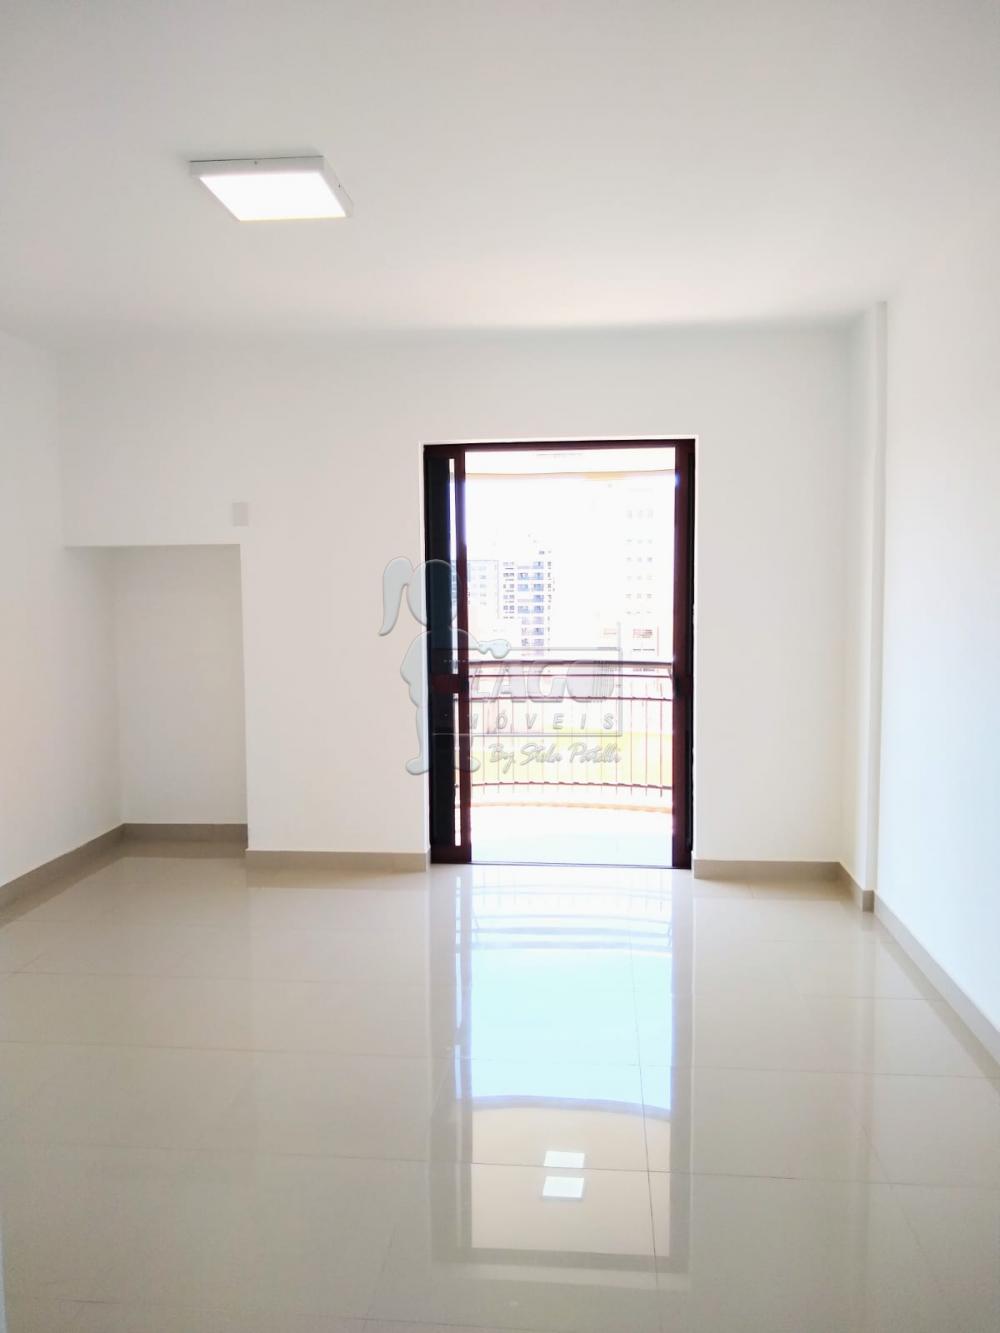 Comprar Apartamentos / Duplex em Ribeirão Preto R$ 1.590.000,00 - Foto 12